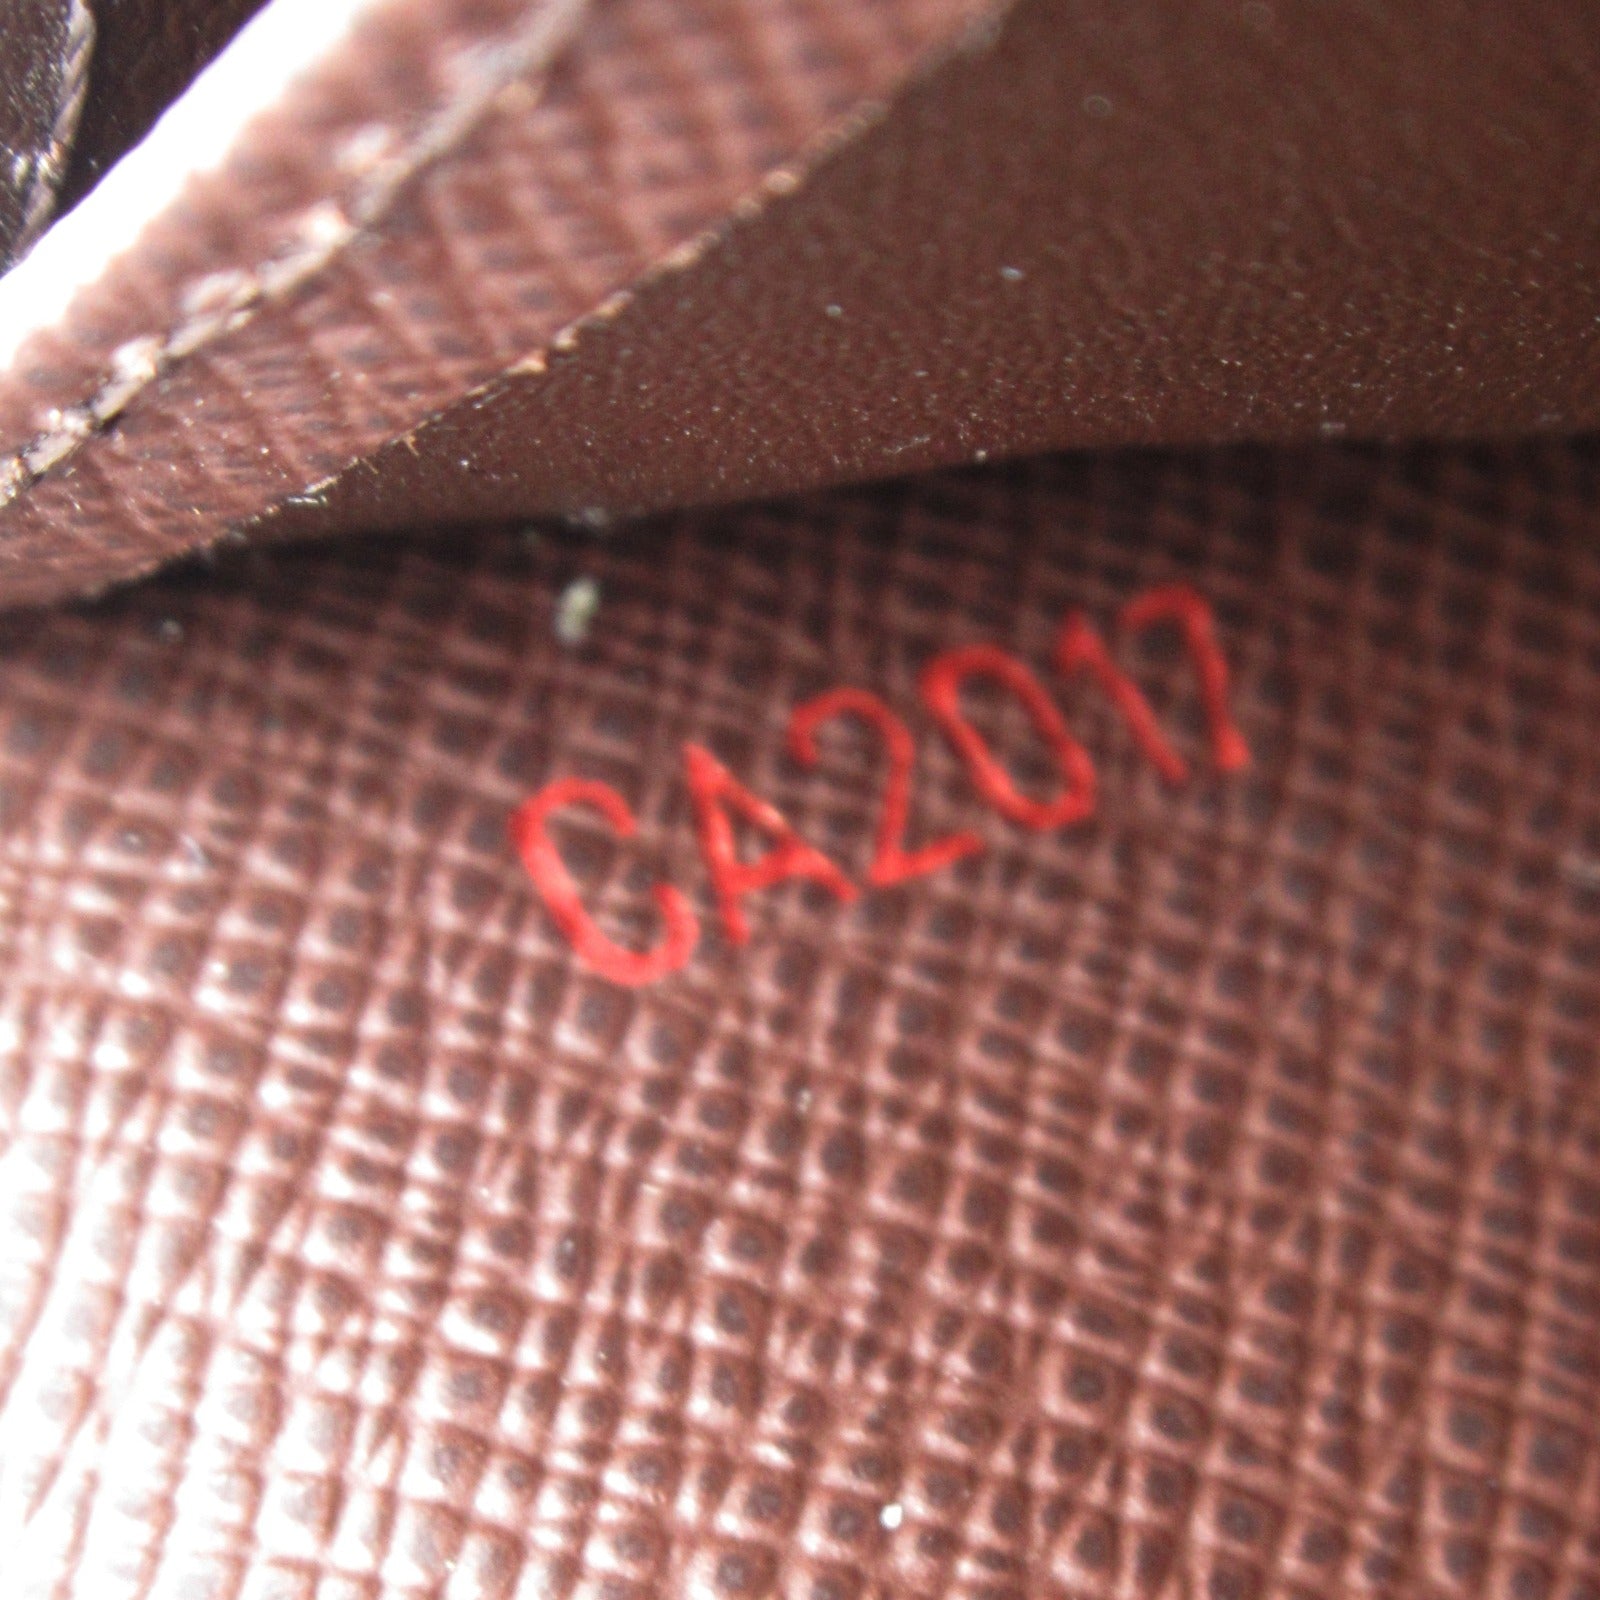 Louis Vuitton Louis Vuitton Portefolio Sarah Double Fold Wallet Wallet PVC Coated Canvas Damier  Brown N61734